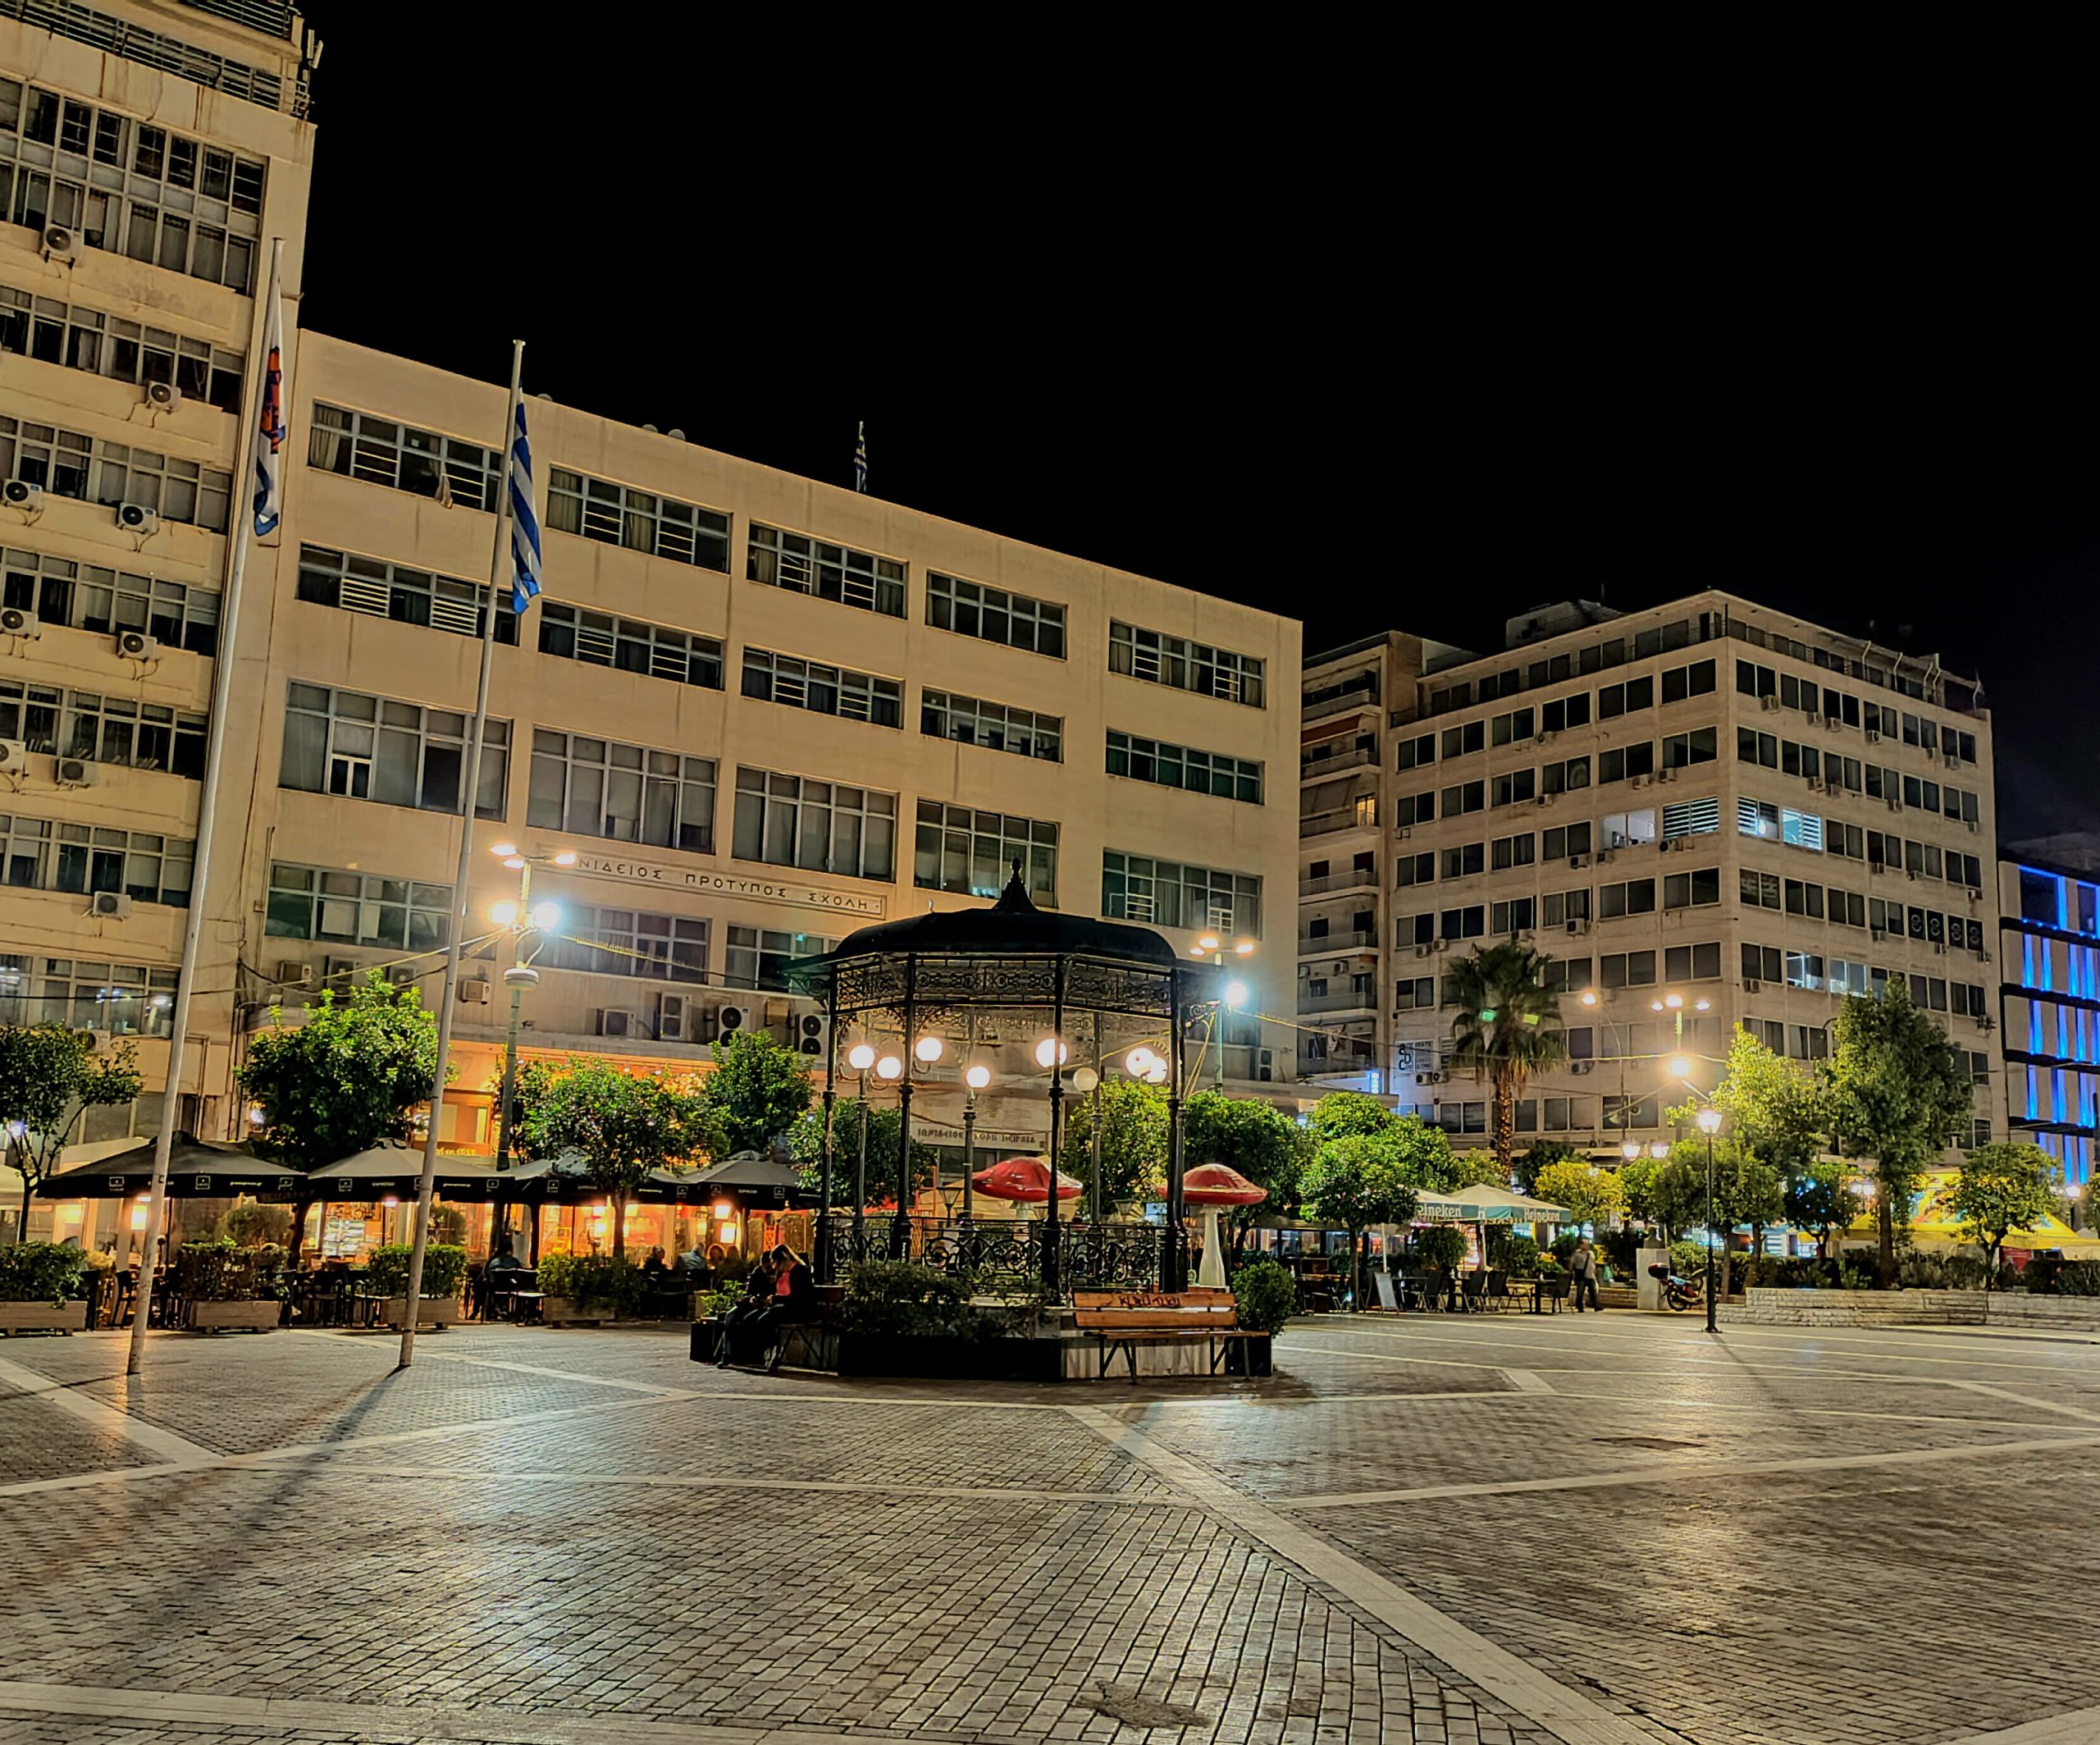 Η πλατεία Κοραή είναι μία από τις πιο πολυσύχναστες πλατείες του Πειραιά